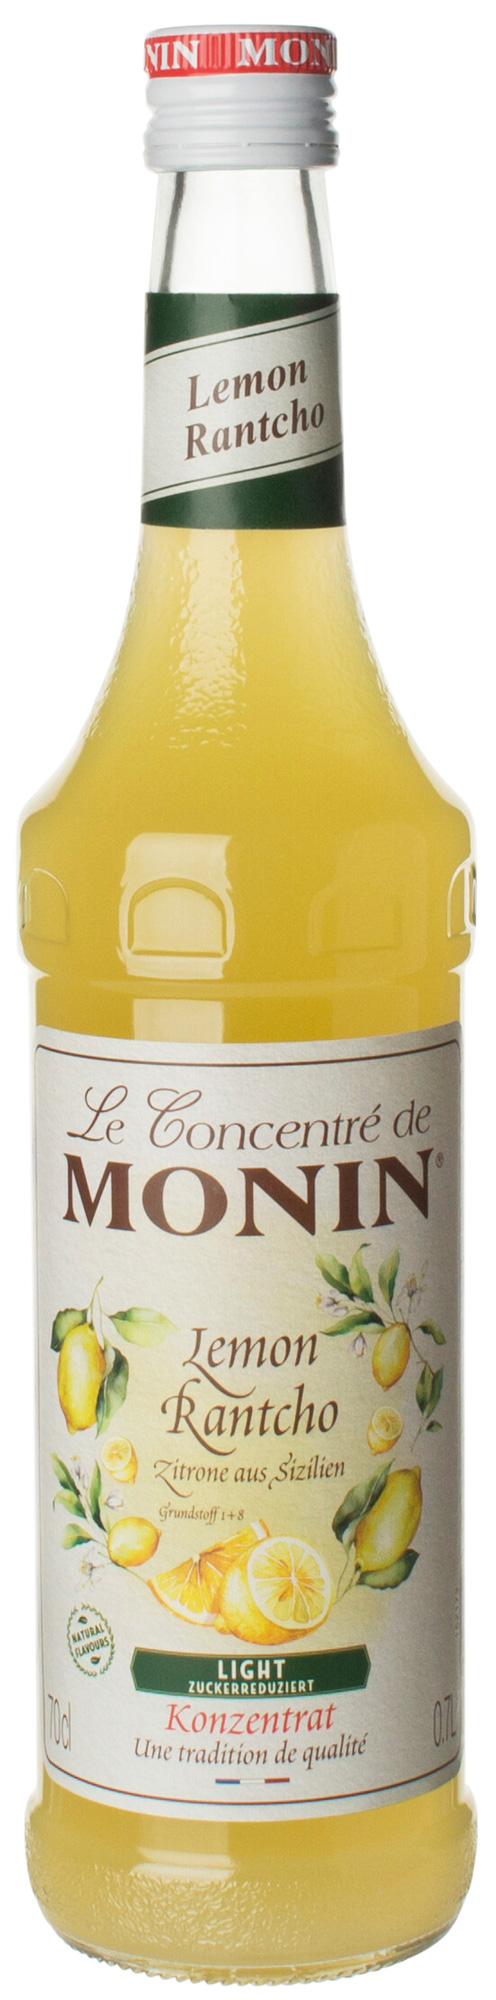 Rantcho Lemon light - Monin Syrup (0,7l)